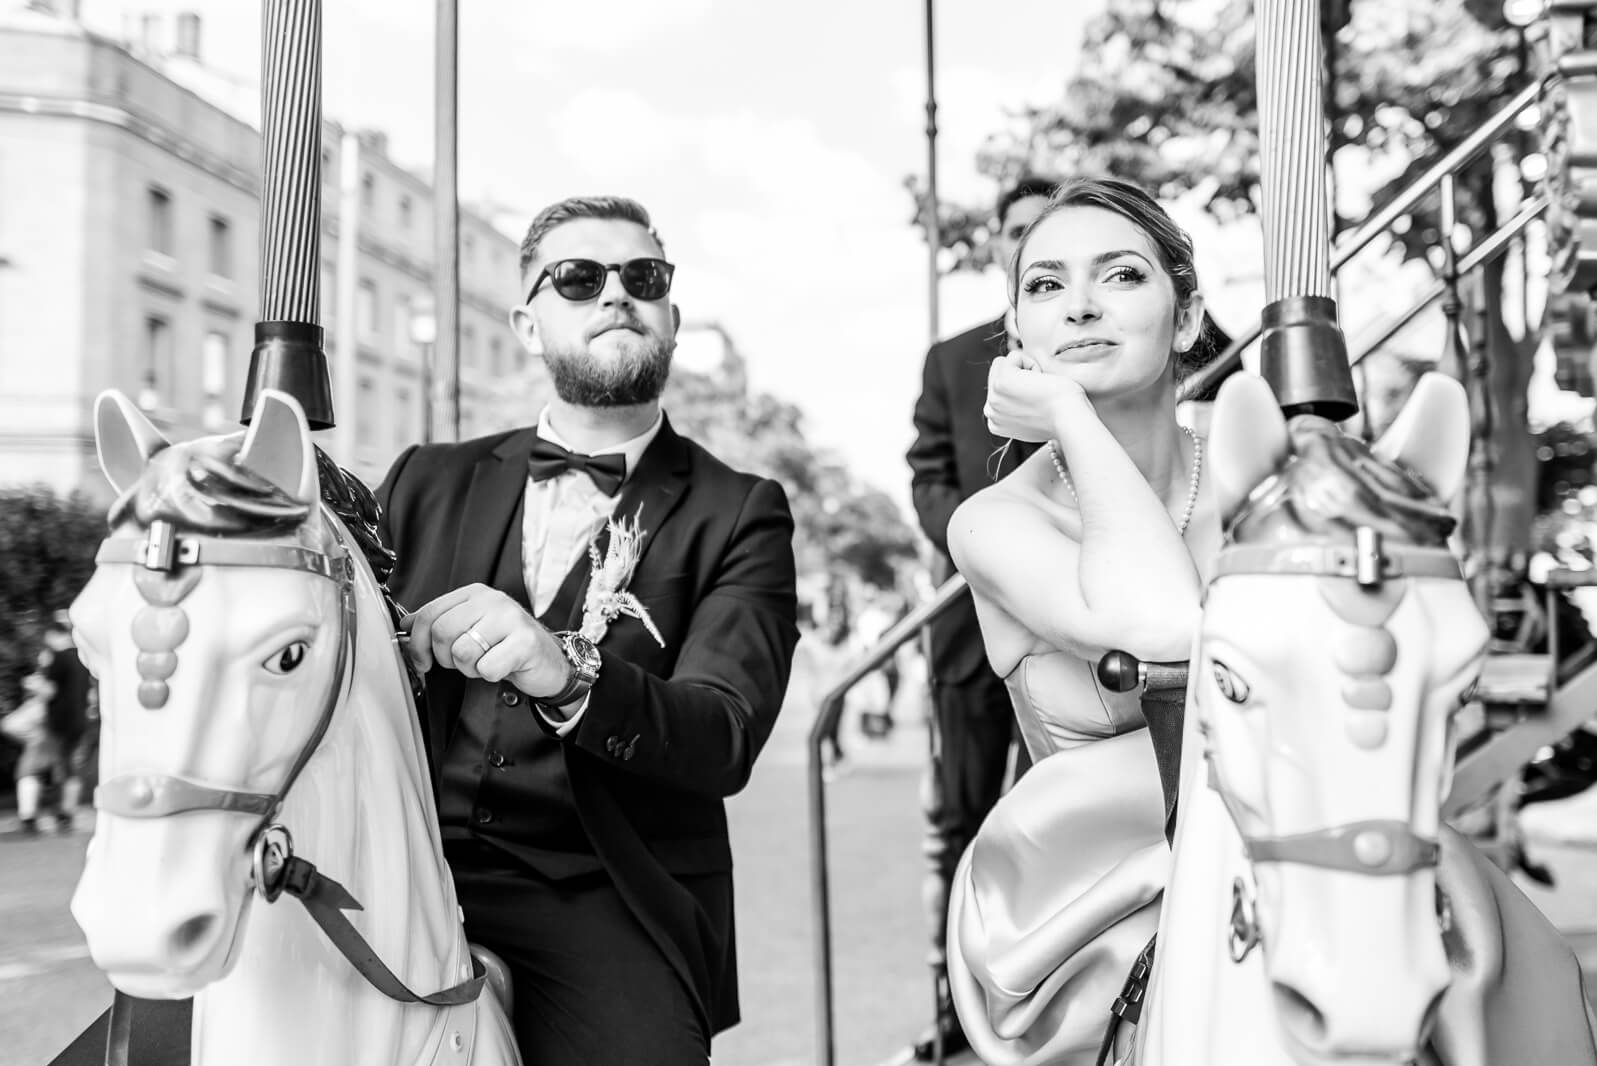 Photographe de mariage à Toulouse, les mariés sur le carrousel de la Place Wilson